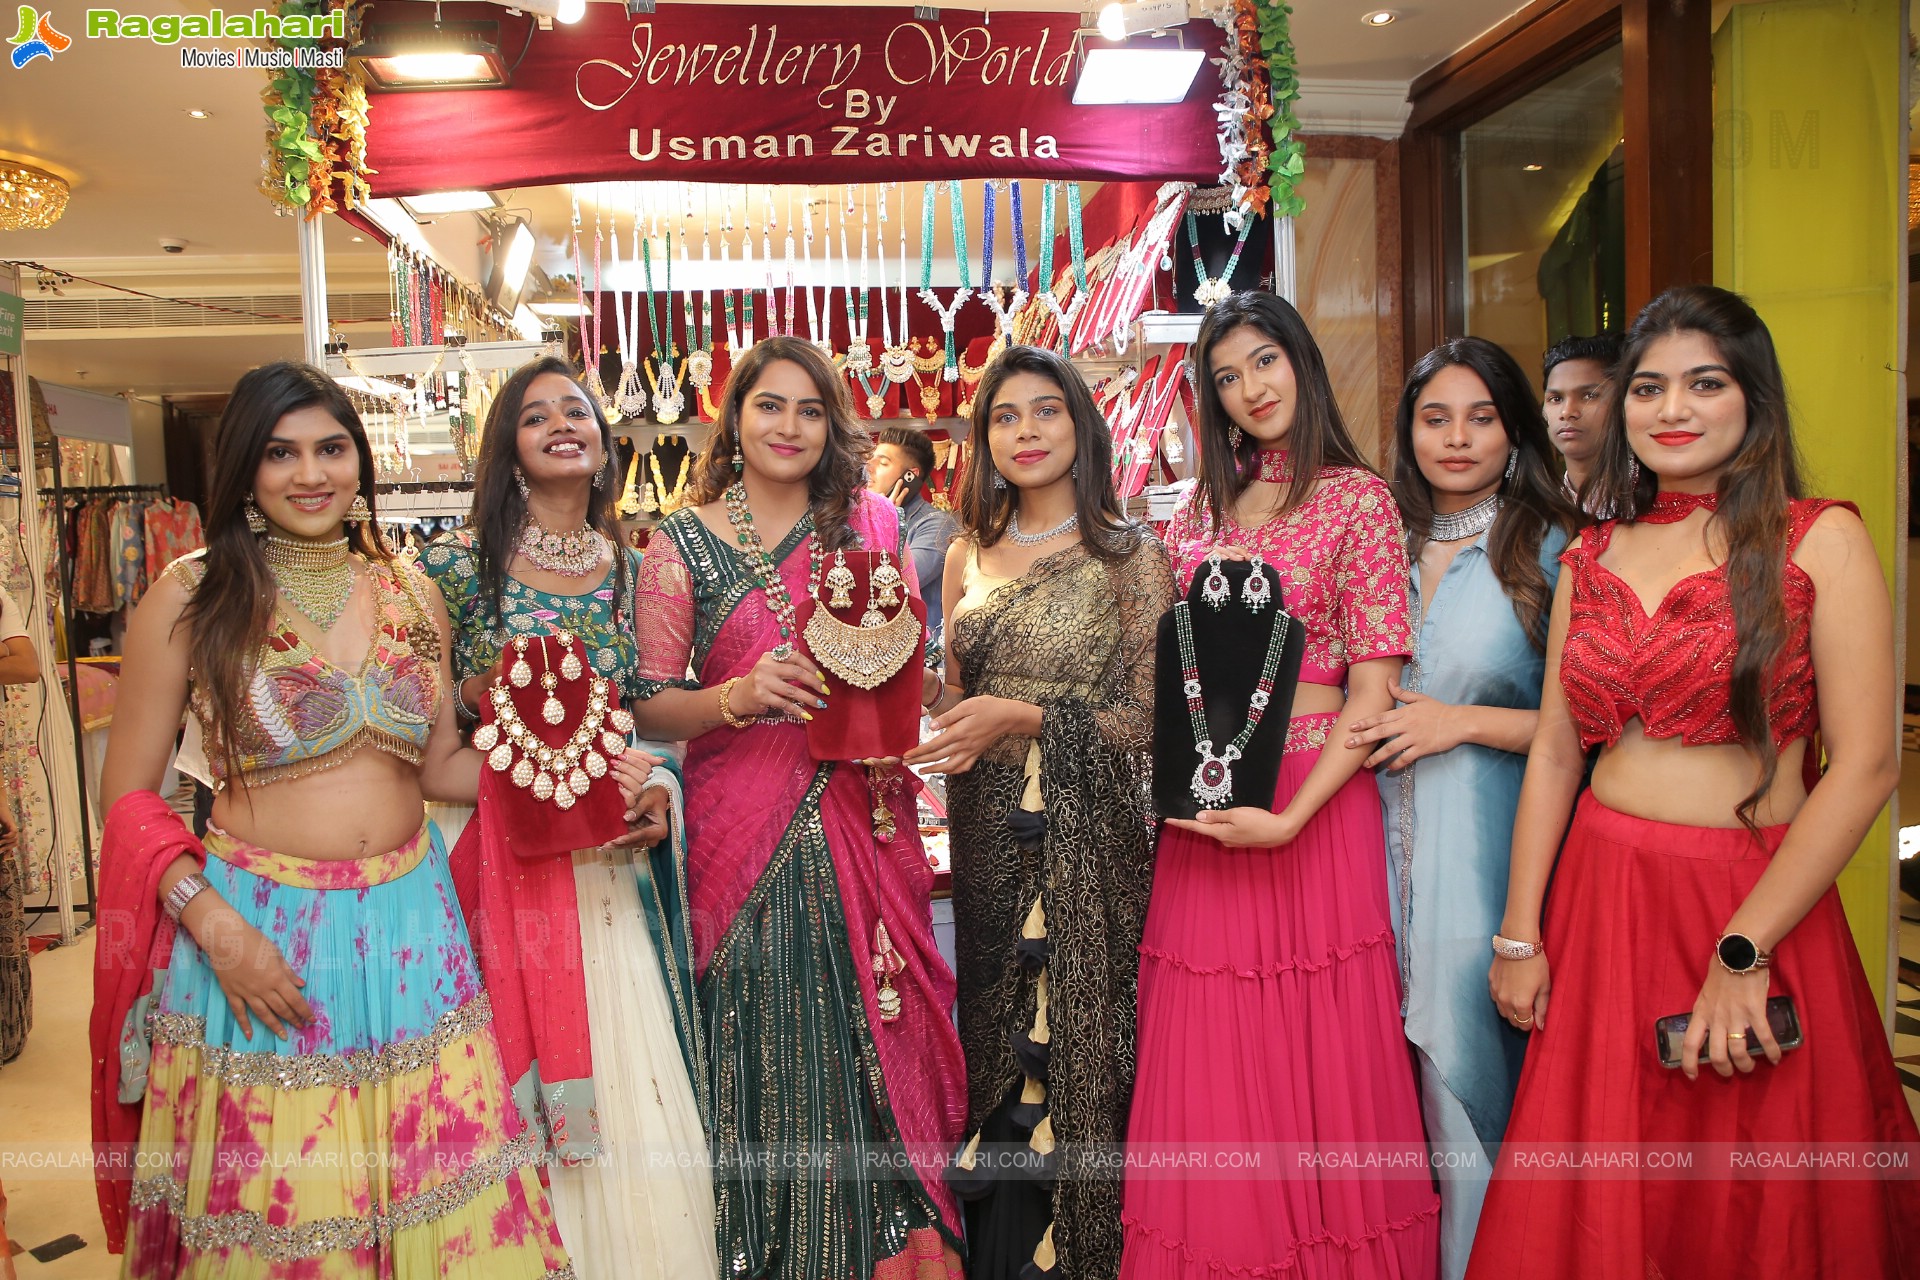 Sutraa Exhibition Wedding Special December 2022 Kicks Off at Taj Krishna, Hyderabad